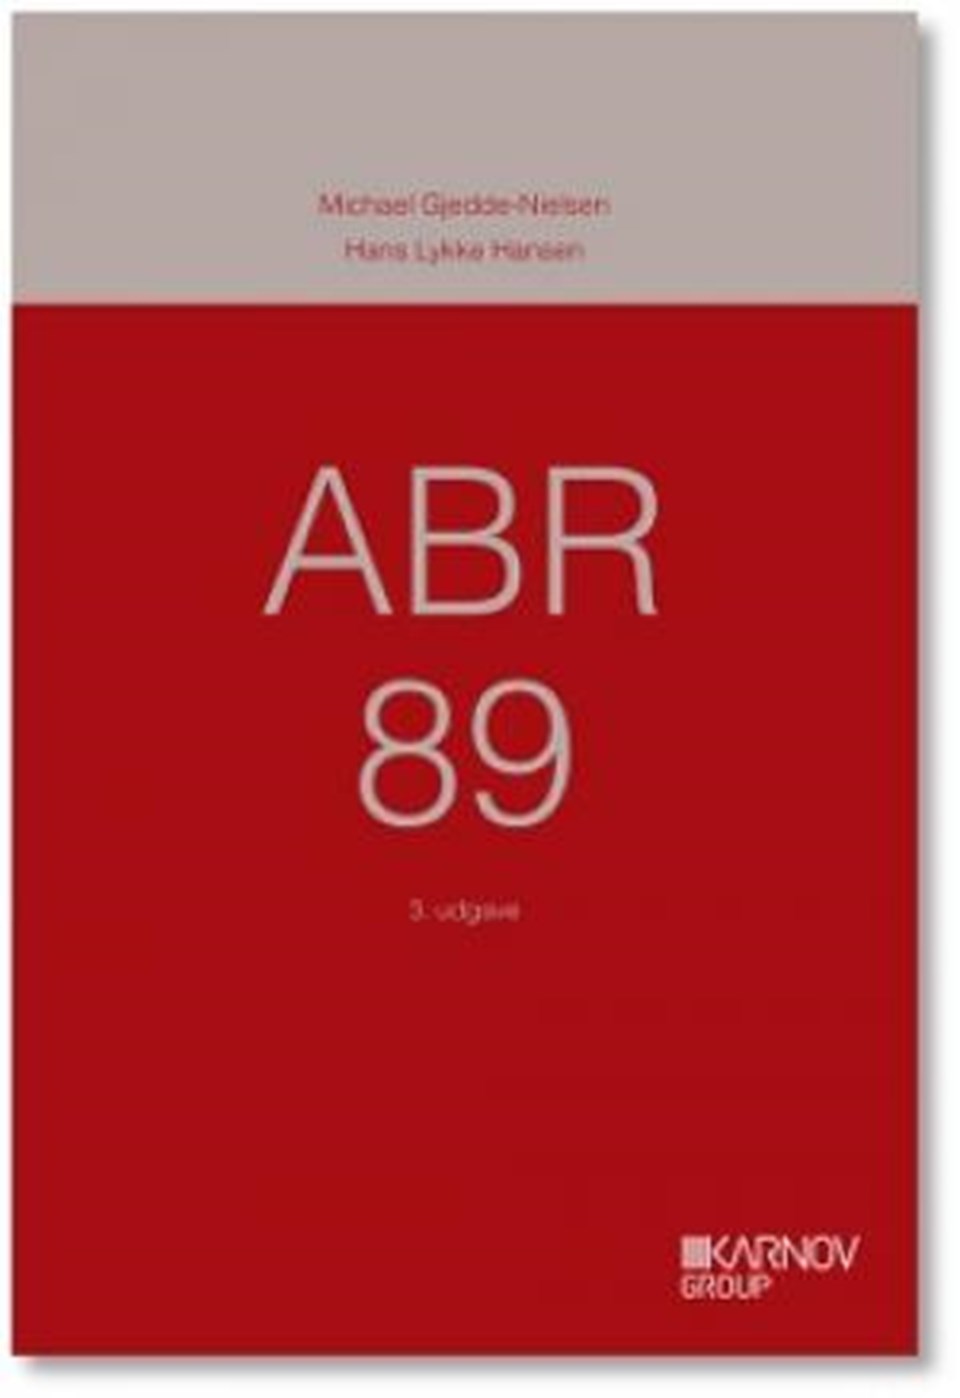 ABR 89 - Almindelige Bestemmelser for teknisk Råd